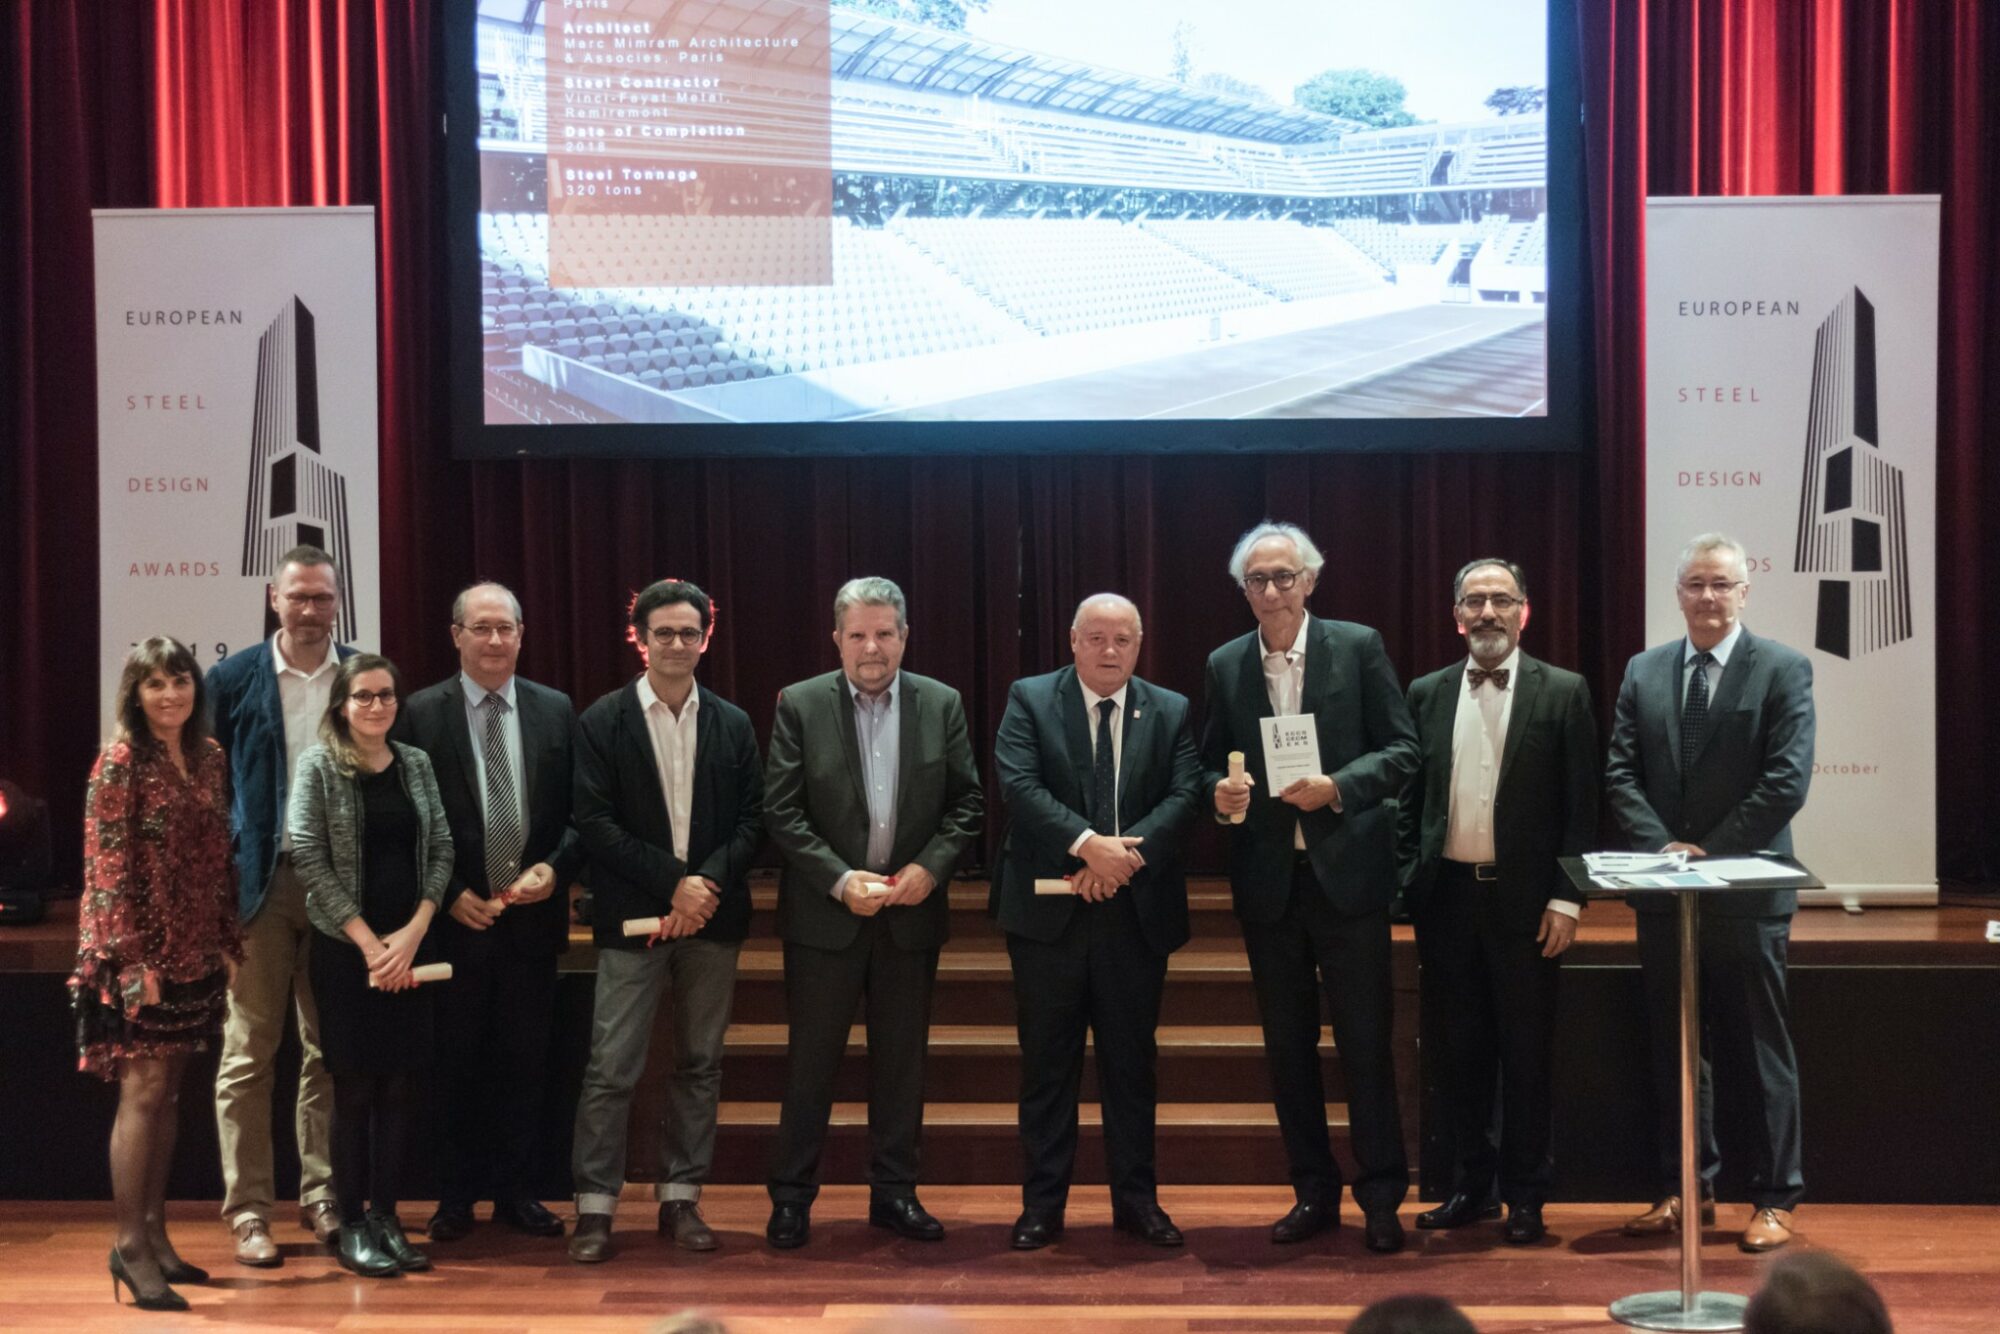 La FFT premiata per la realizzazione di Court Simonne-Mathieu durante la cerimonia degli "European Steel Design Awards 2019" a Bruxelles